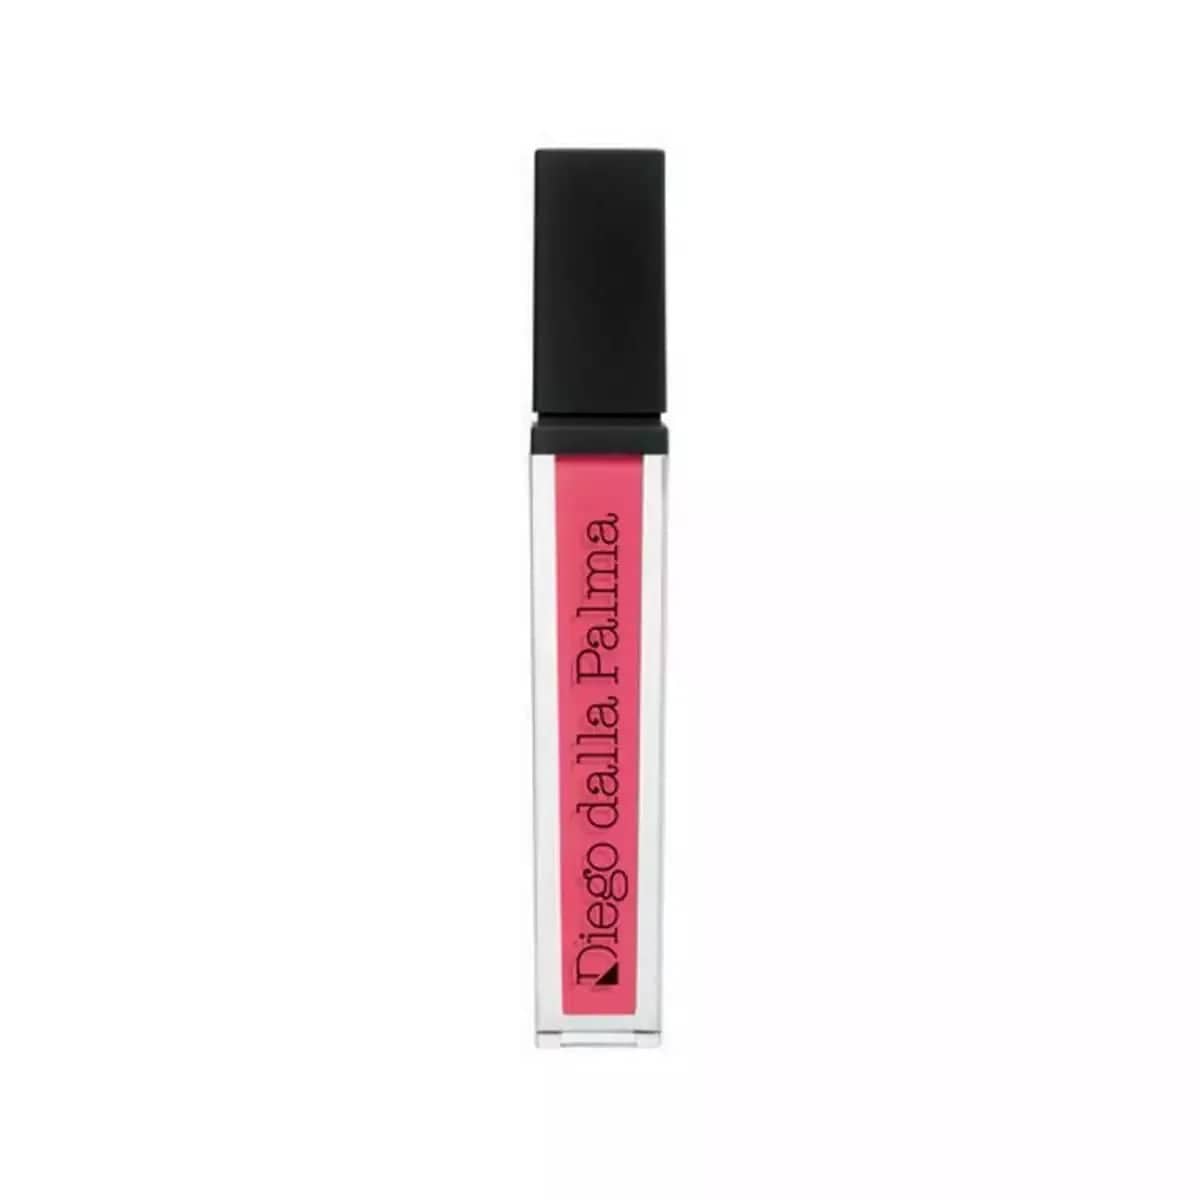 Diego Dalla Palma Push Up Gloss Lip Gloss Volume Effect 8 mL / 53-Deep Pink